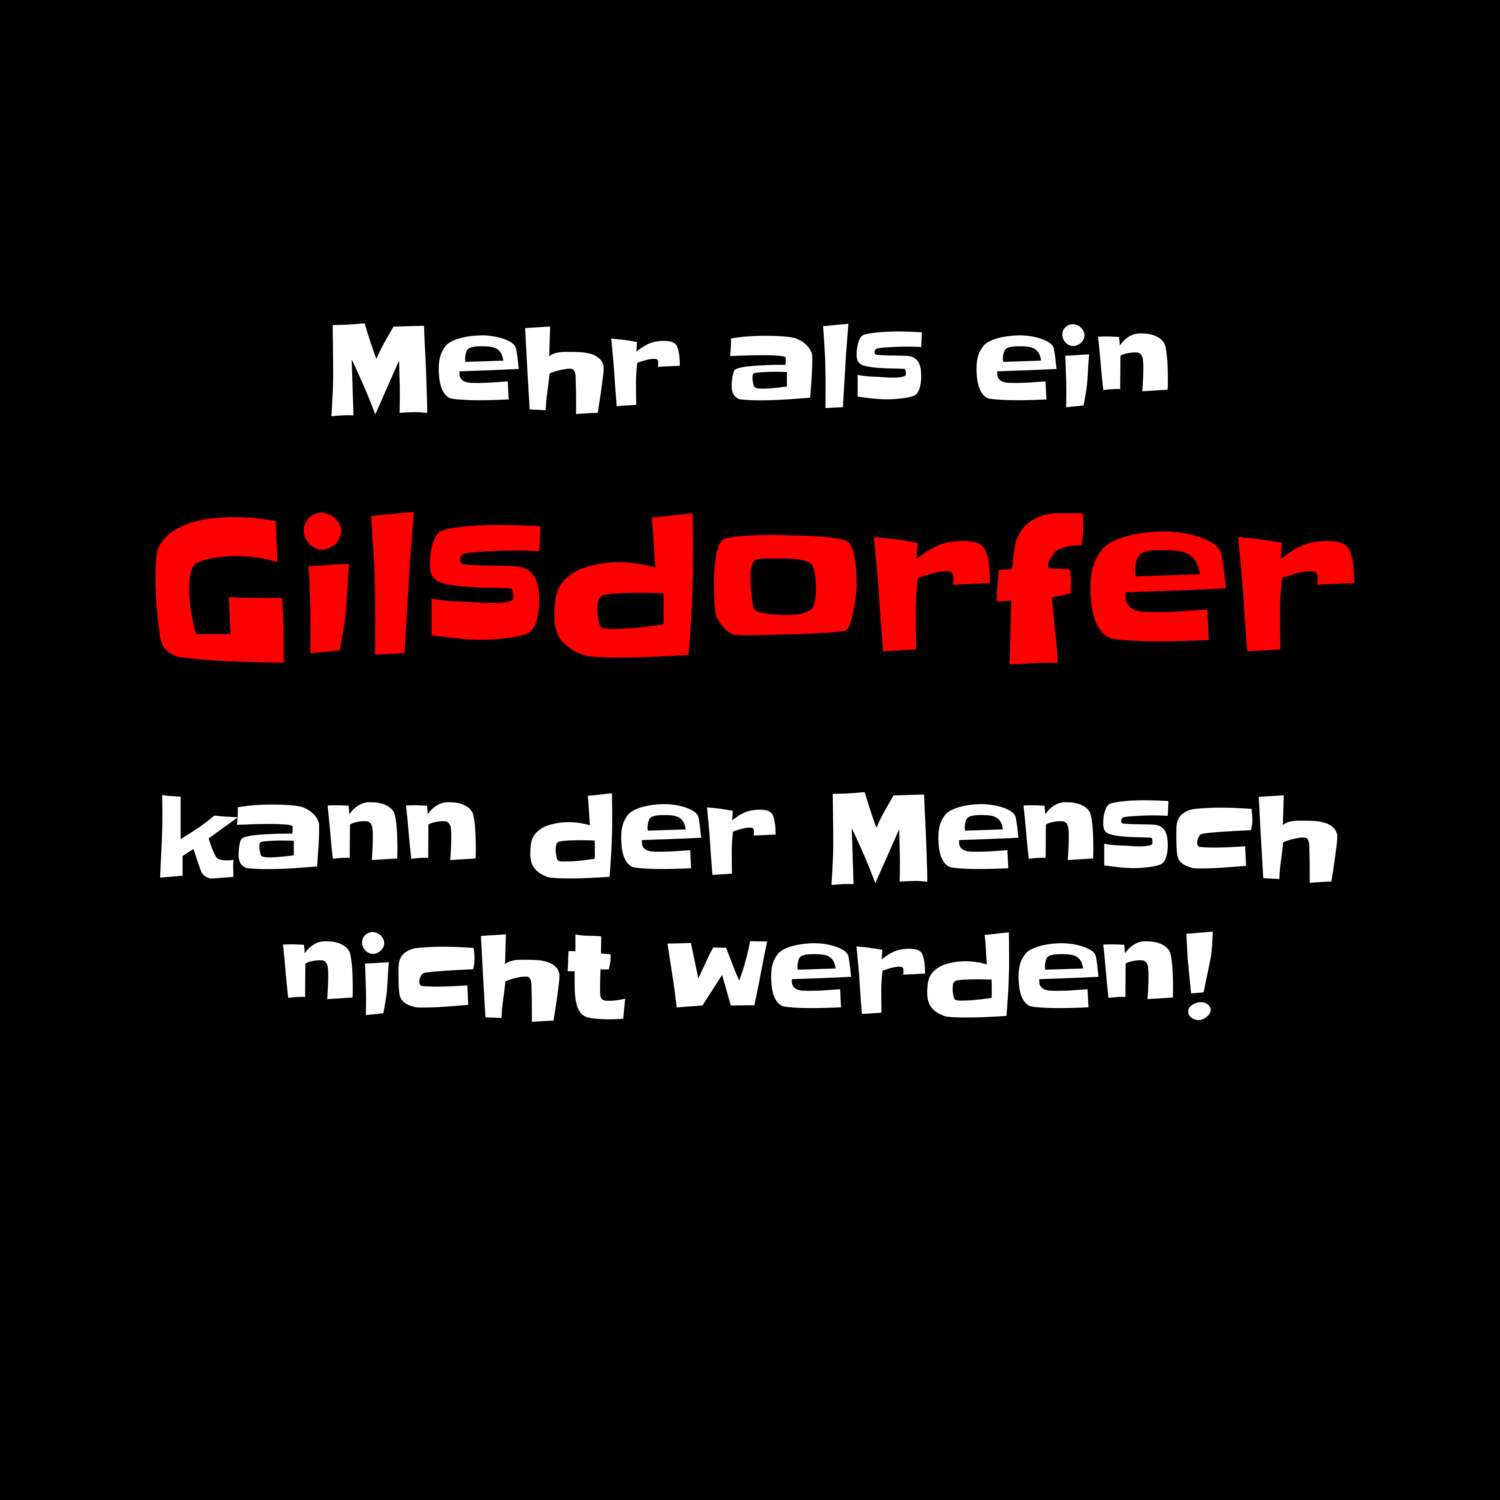 Gilsdorf T-Shirt »Mehr als ein«